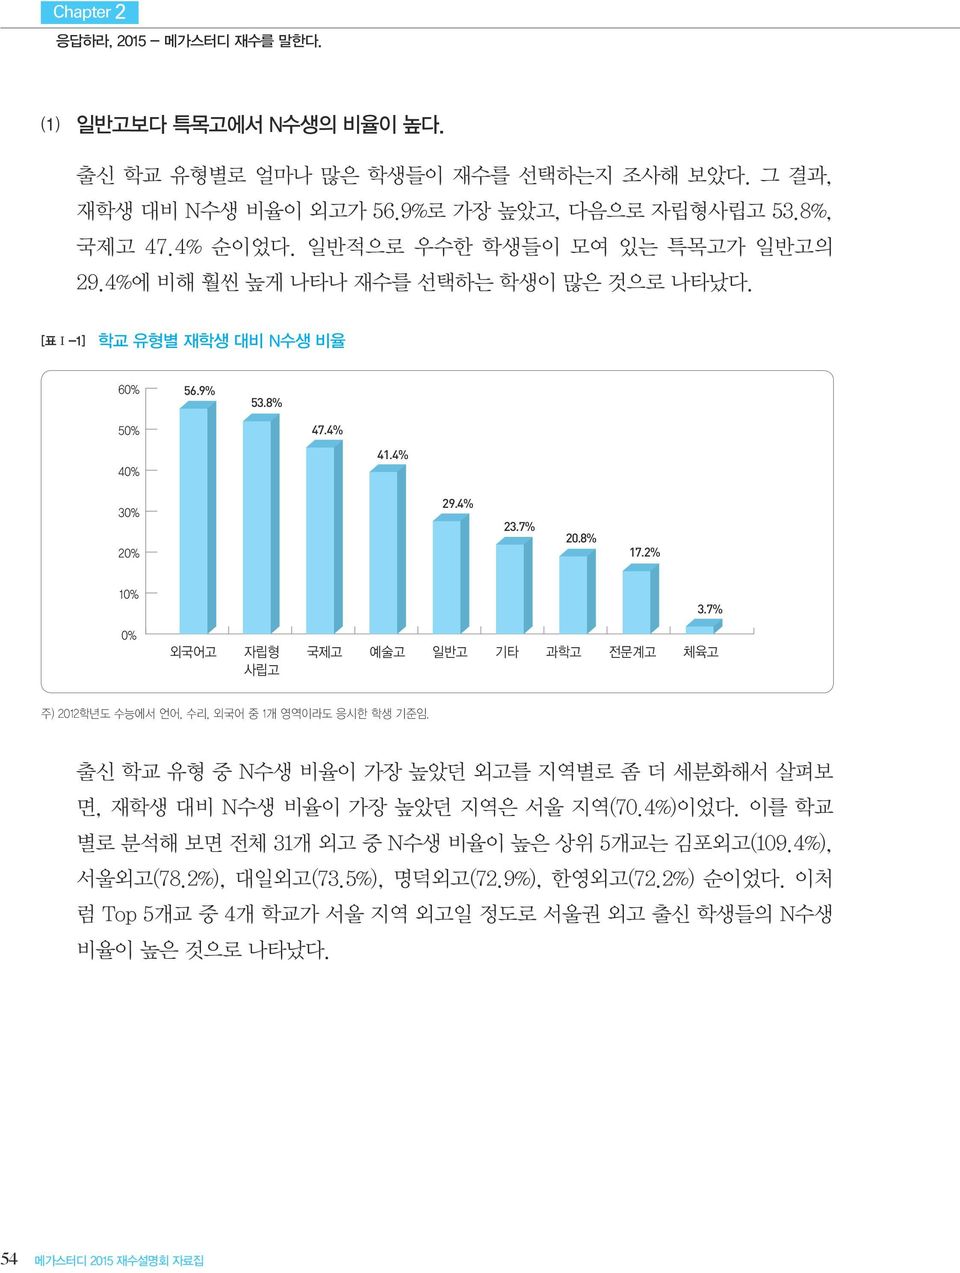 7% 주) 2012학년도 수능에서 언어, 수리, 외국어 중 1개 영역이라도 응시한 학생 기준임. 출신 학교 유형 중 N수생 비율이 가장 높았던 외고를 지역별로 좀 더 세분화해서 살펴보 면, 재학생 대비 N수생 비율이 가장 높았던 지역은 서울 지역(70.4%)이었다.